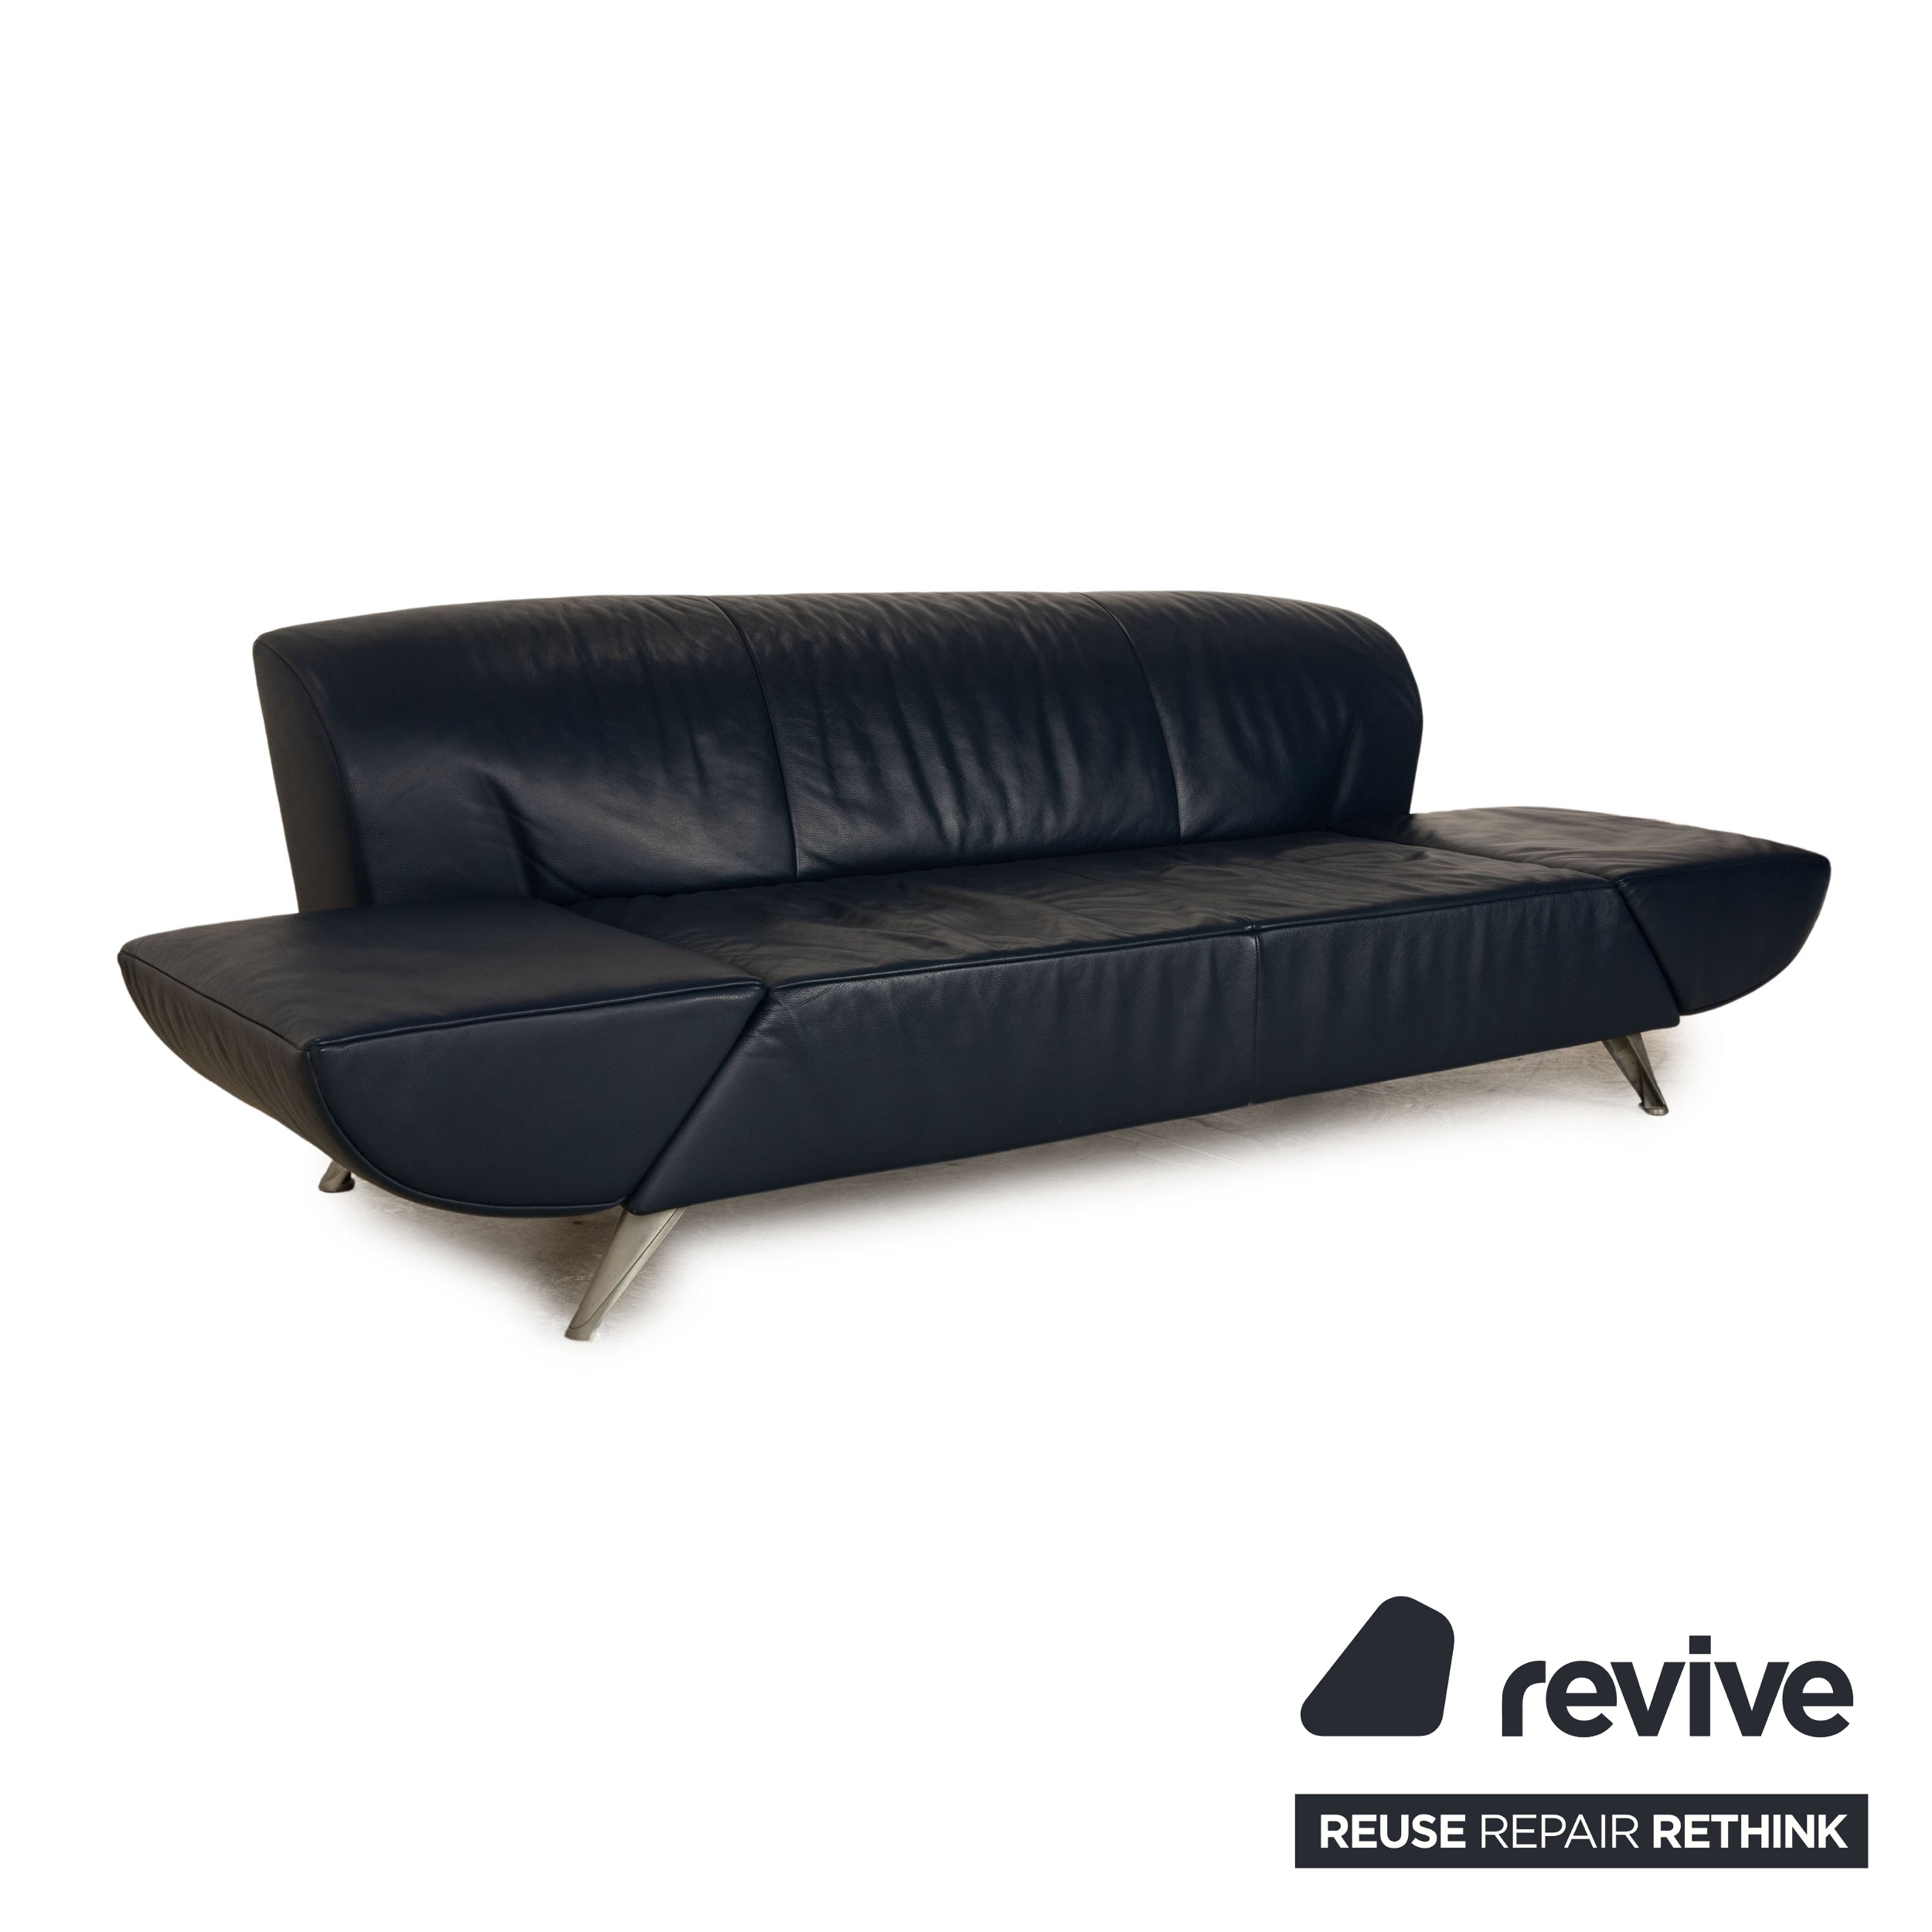 Jori JR-8100 Leder Dreisitzer Blau Dunkelblau manuelle Funktion Sofa Couch